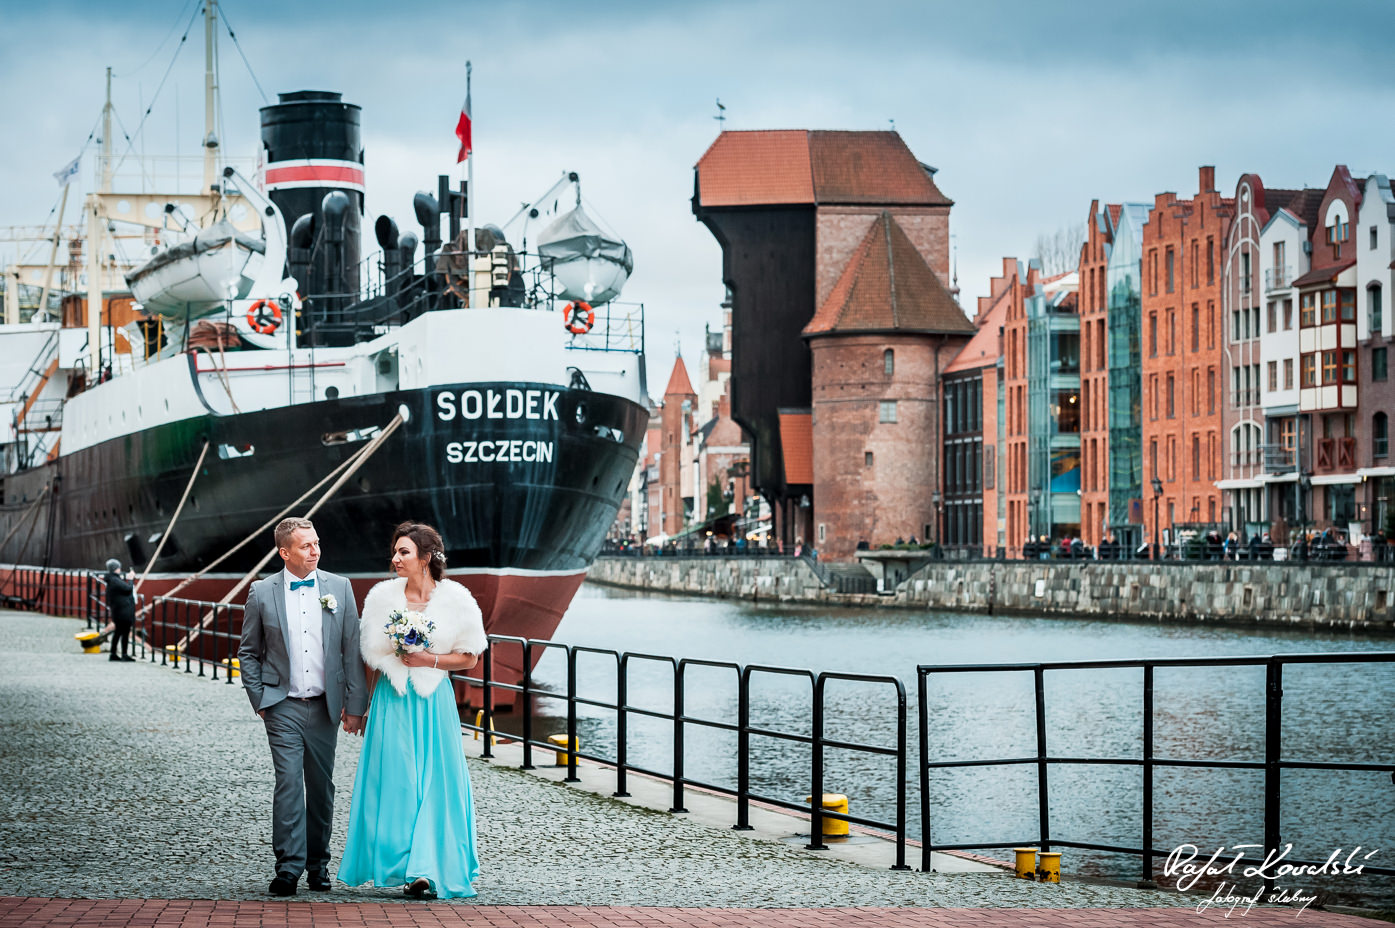 Sesja ślubna nad Motławą - spacerując pobrzeżem na wyspie Ołowianka będziecie mogli zrobić sobie zdjęcia z Sołdkiem i Żurawiem Gdańskim w tle